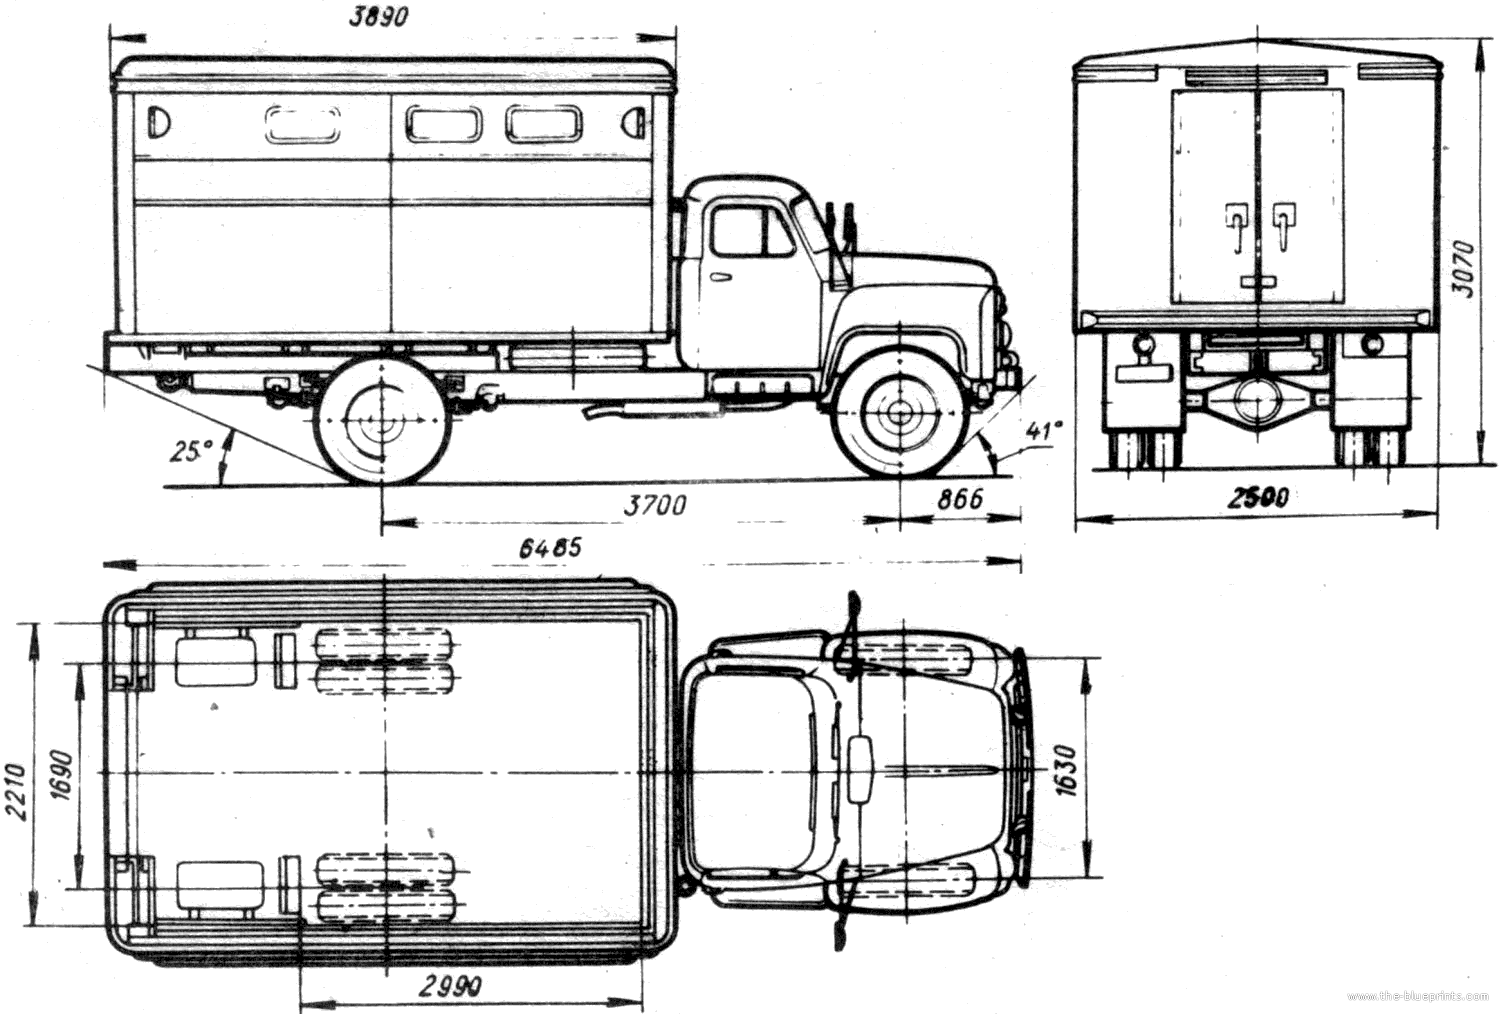 The-Blueprints.com - Blueprints > Trucks > GAZ > GAZ-53A GZSA-